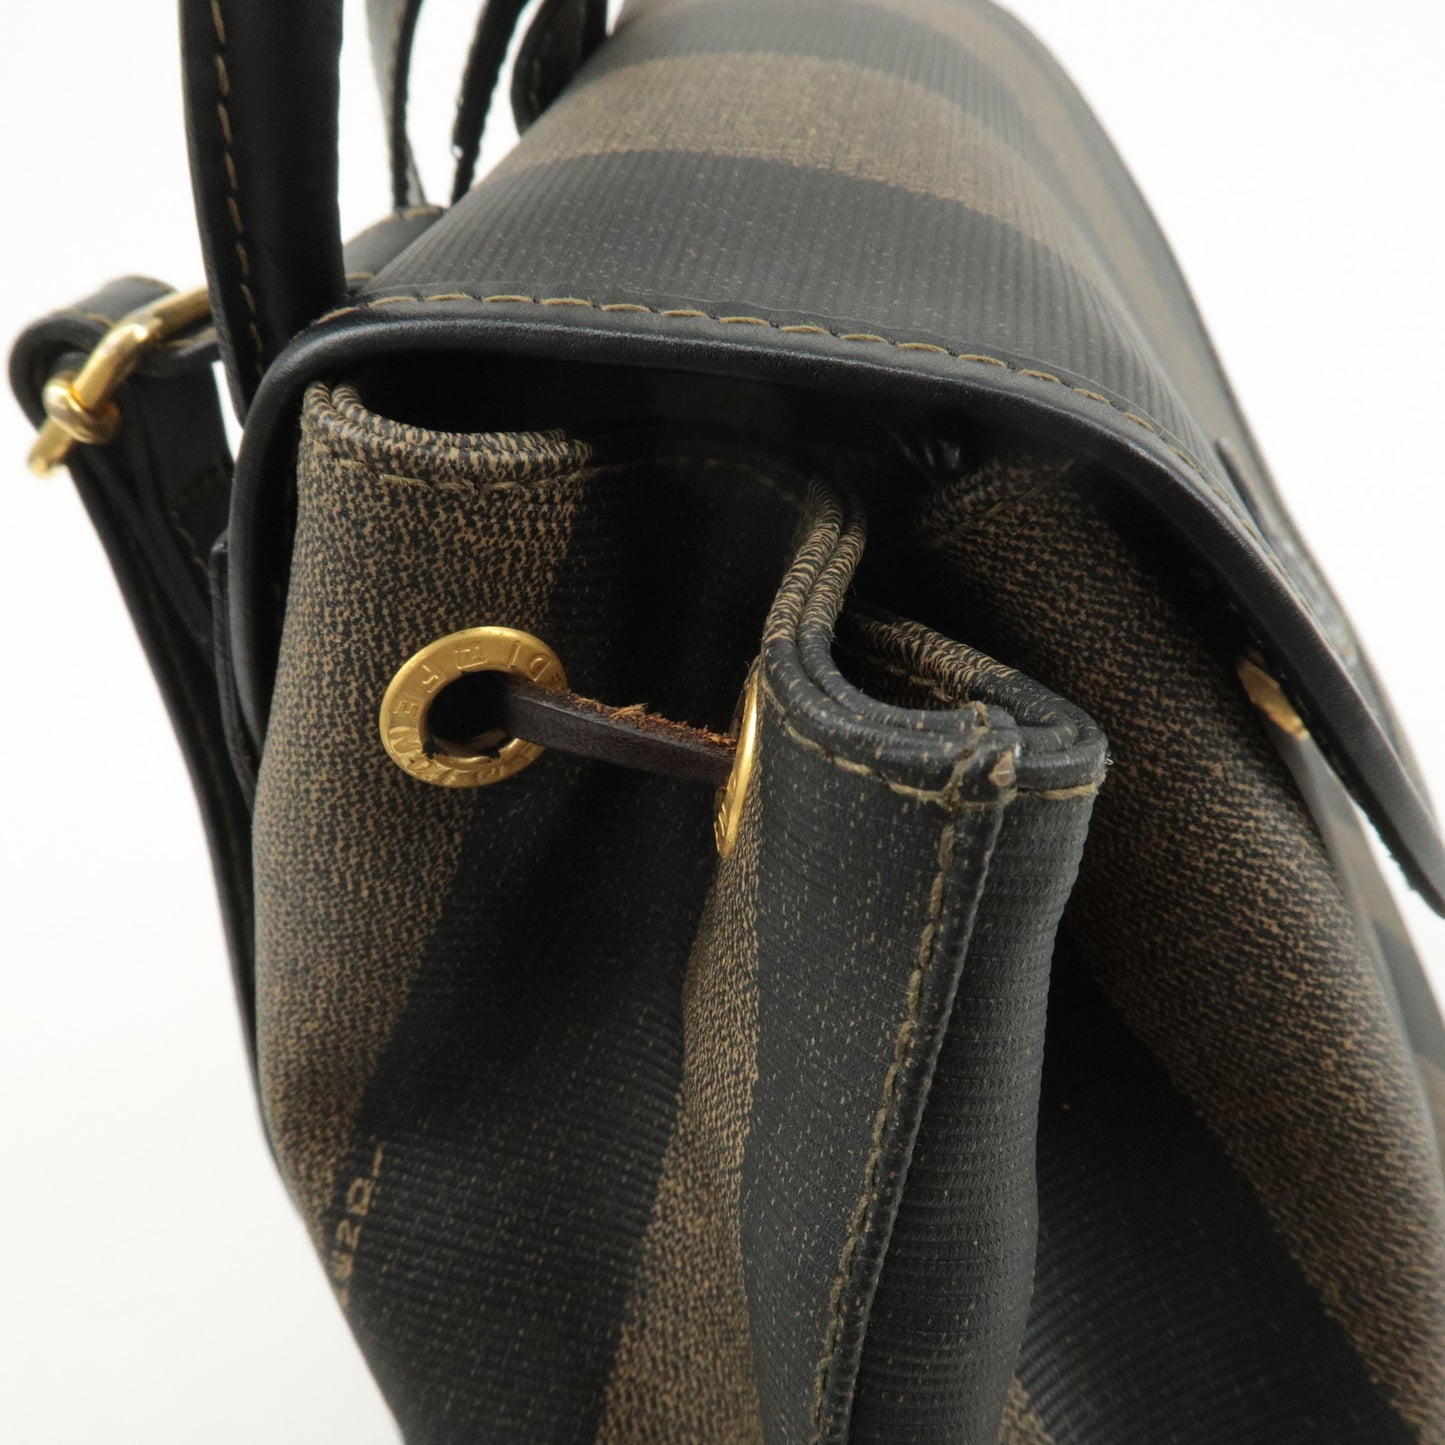 FENDI Pequin PVC Leather Back Pack Bag Brown Black 259292